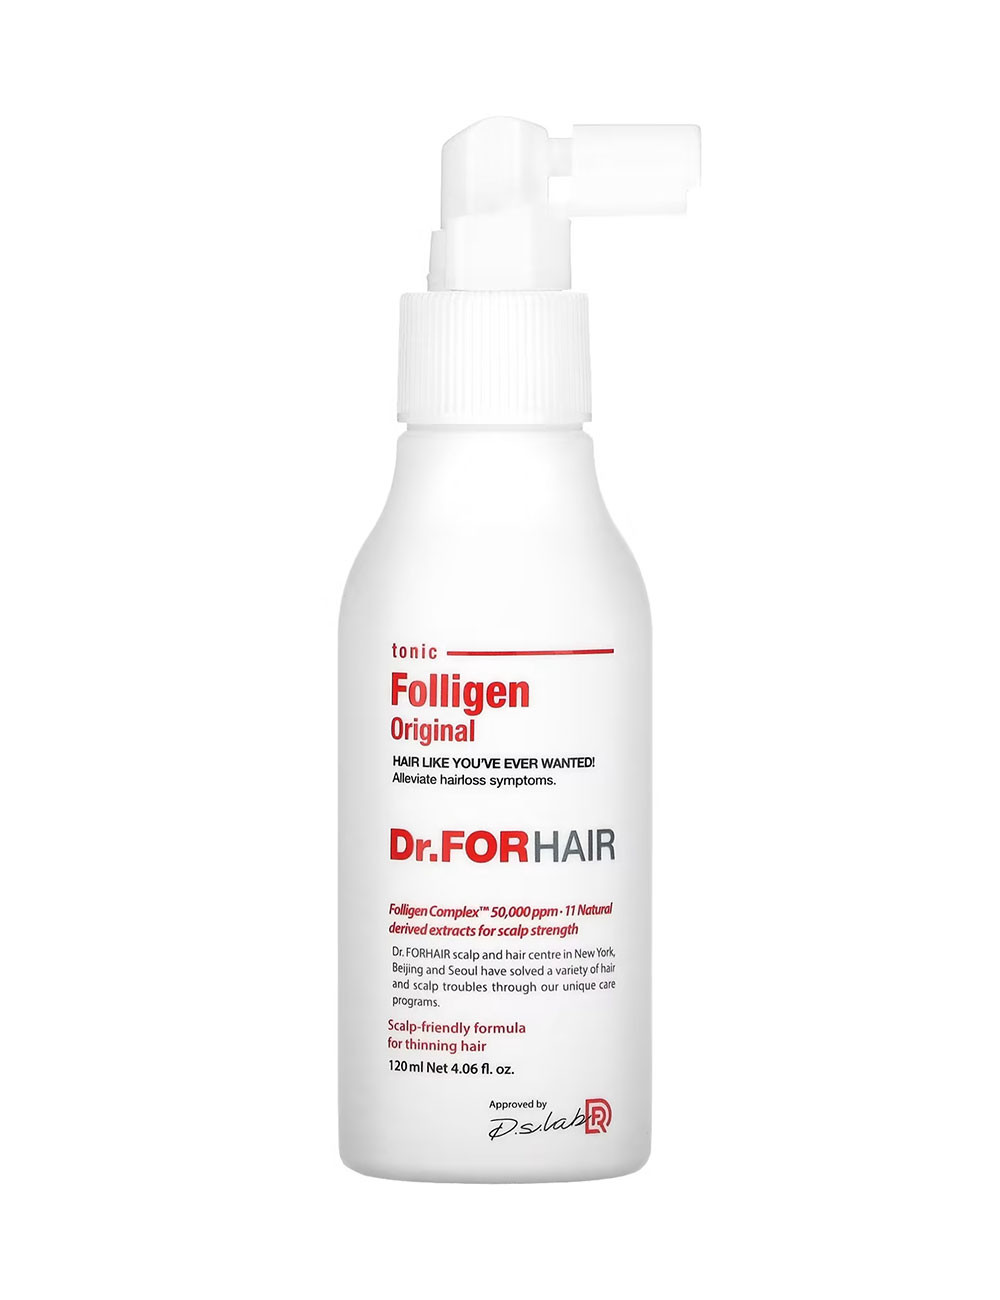 Dr.FORHAIR Folligen Original